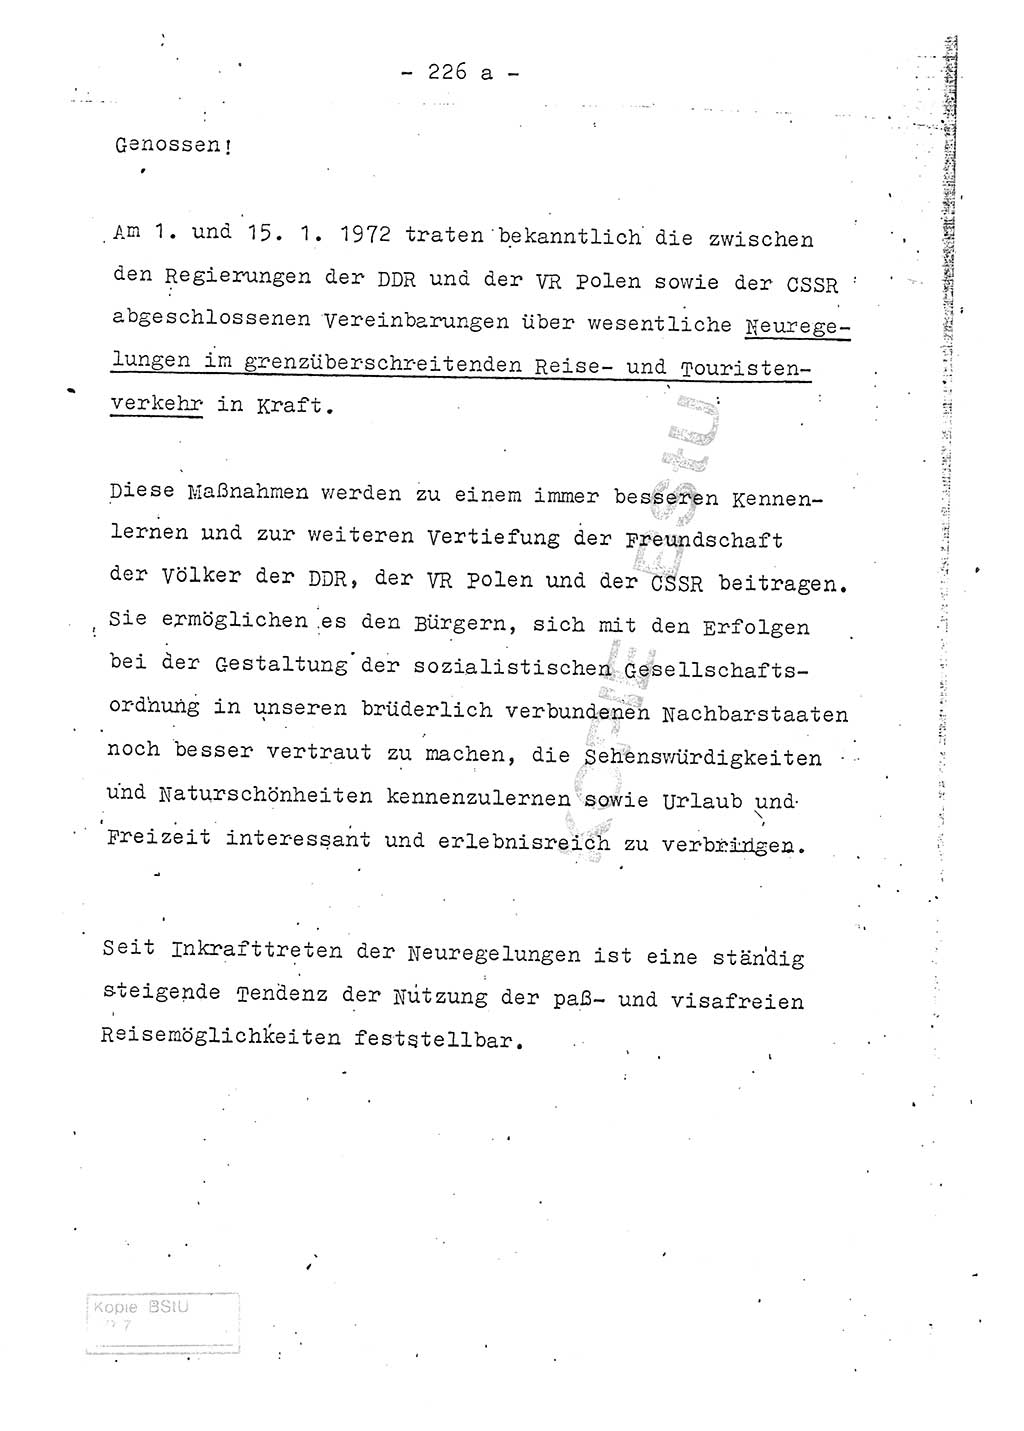 Referat (Entwurf) des Genossen Minister (Generaloberst Erich Mielke) auf der Dienstkonferenz 1972, Ministerium für Staatssicherheit (MfS) [Deutsche Demokratische Republik (DDR)], Der Minister, Geheime Verschlußsache (GVS) 008-150/72, Berlin 25.2.1972, Seite 226/1 (Ref. Entw. DK MfS DDR Min. GVS 008-150/72 1972, S. 226/1)